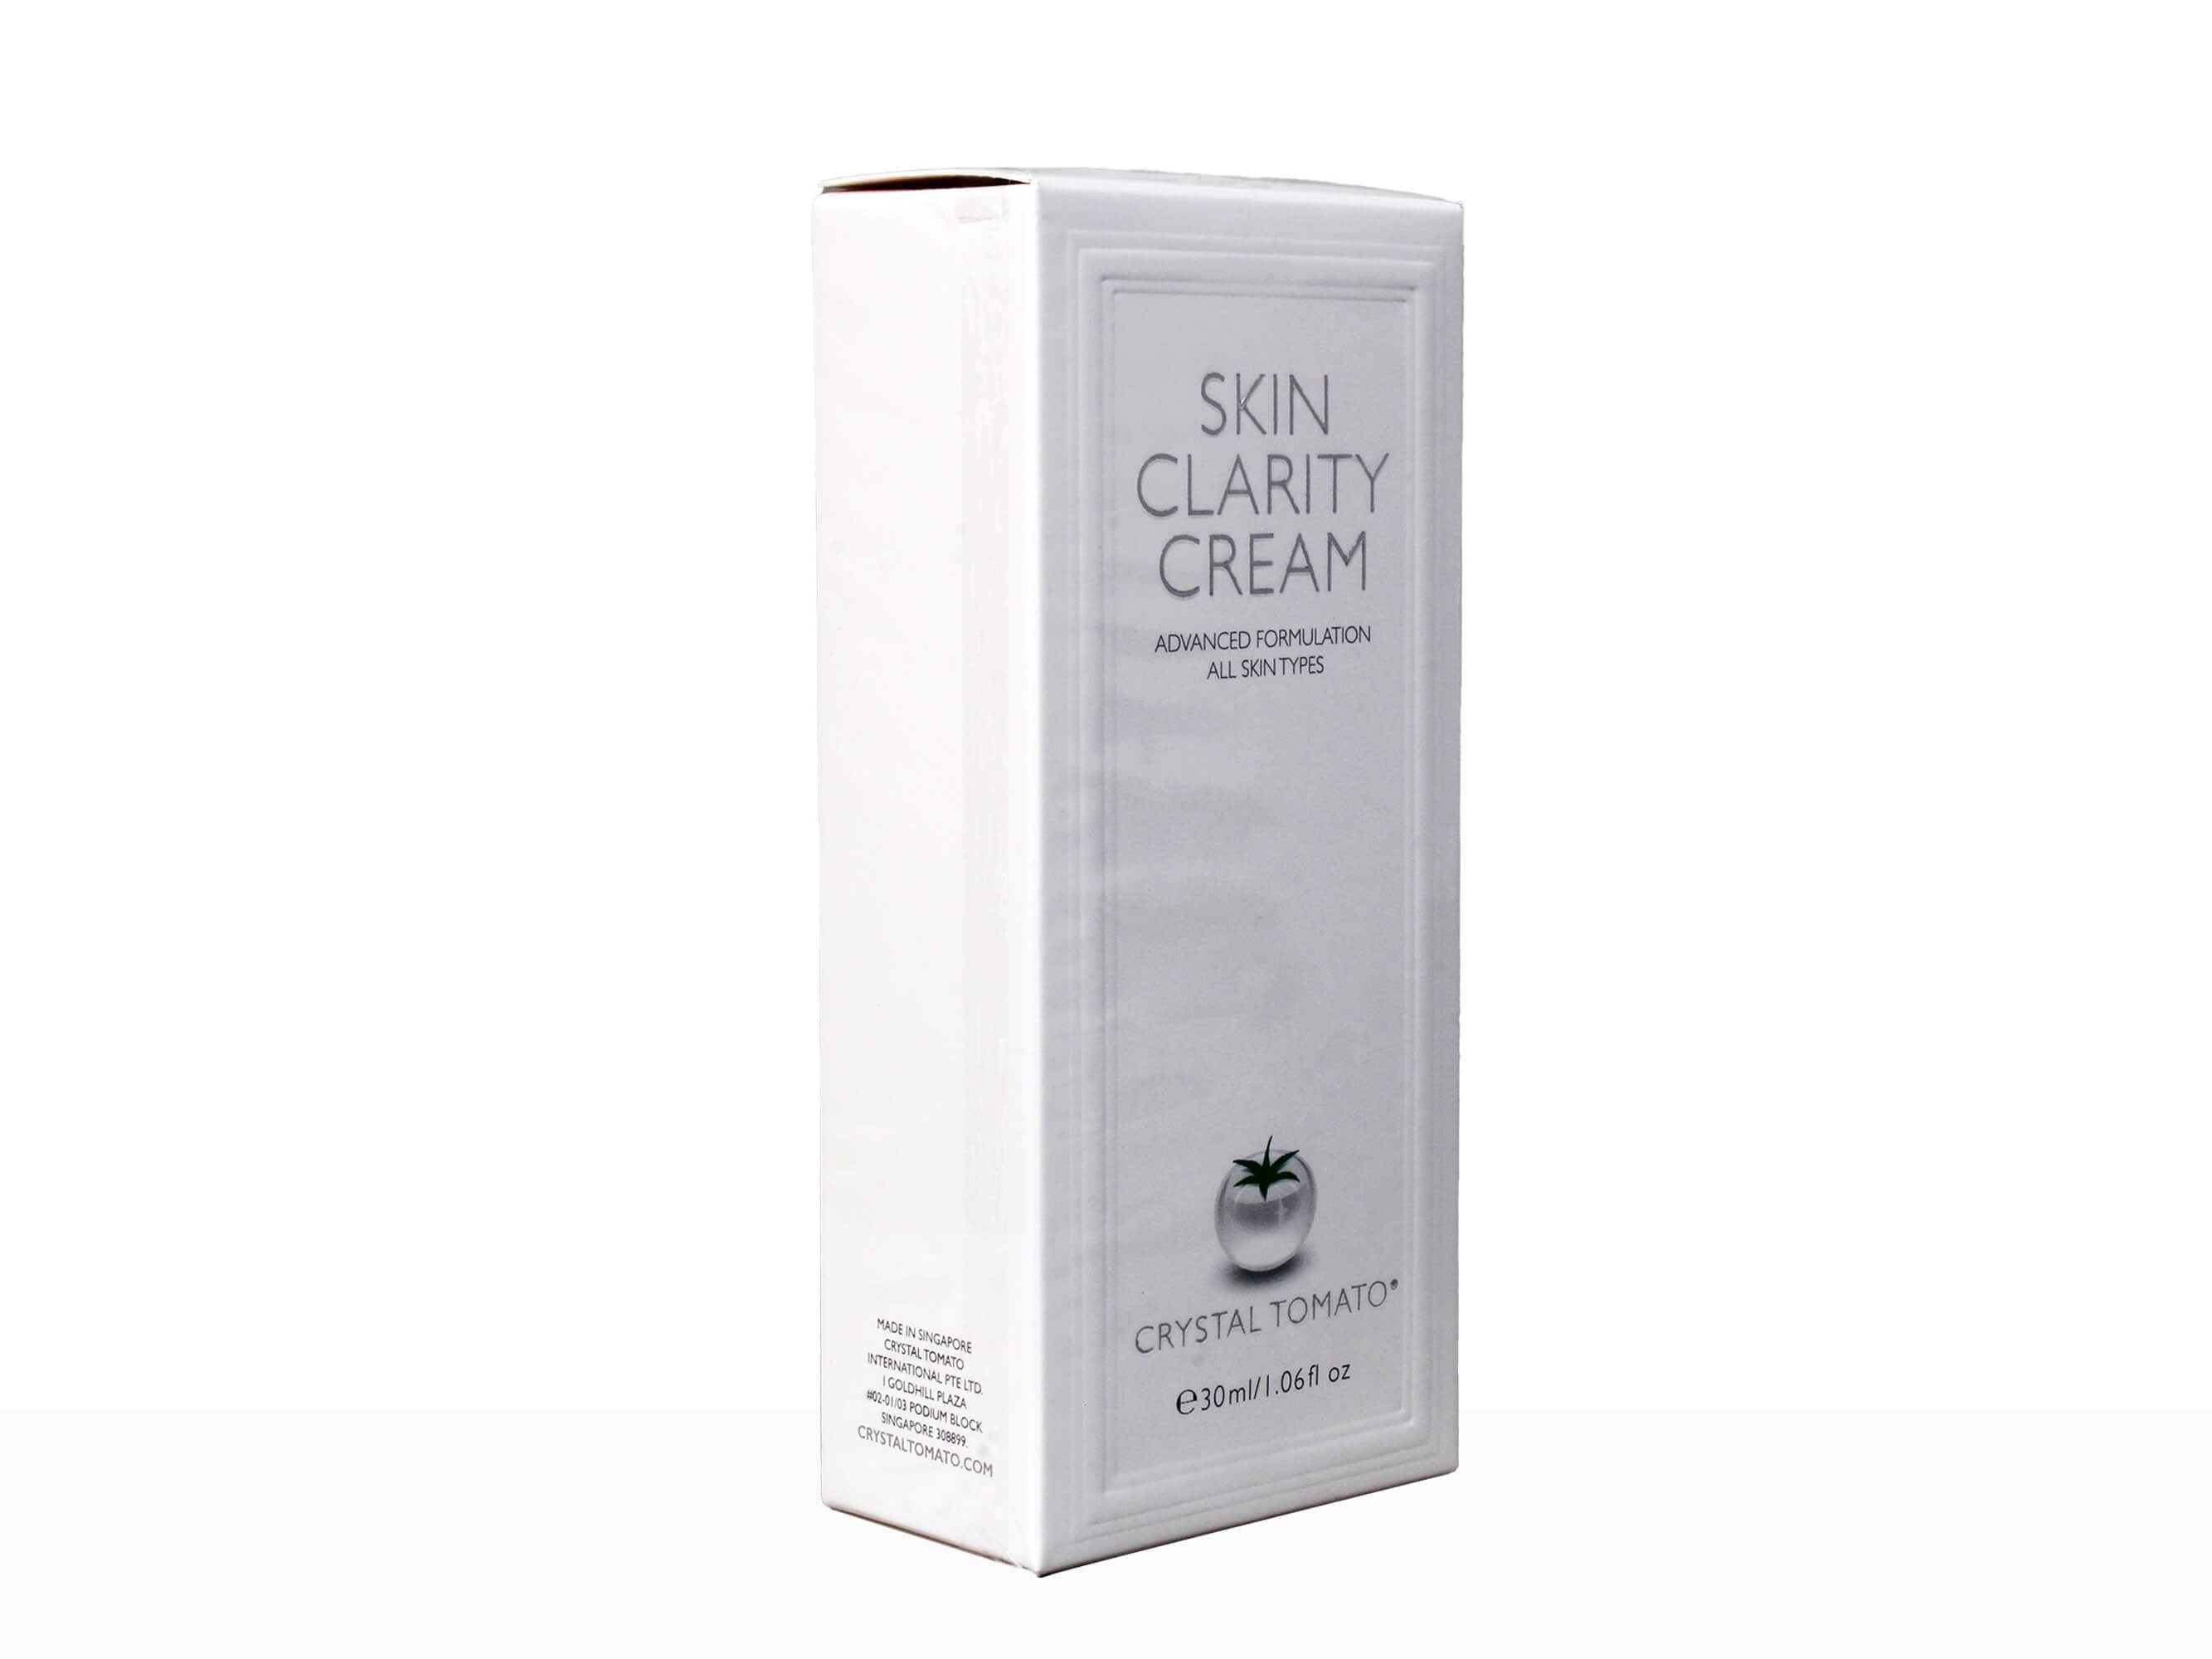 Crystal Tomato Skin Clarity Cream - Clinikally